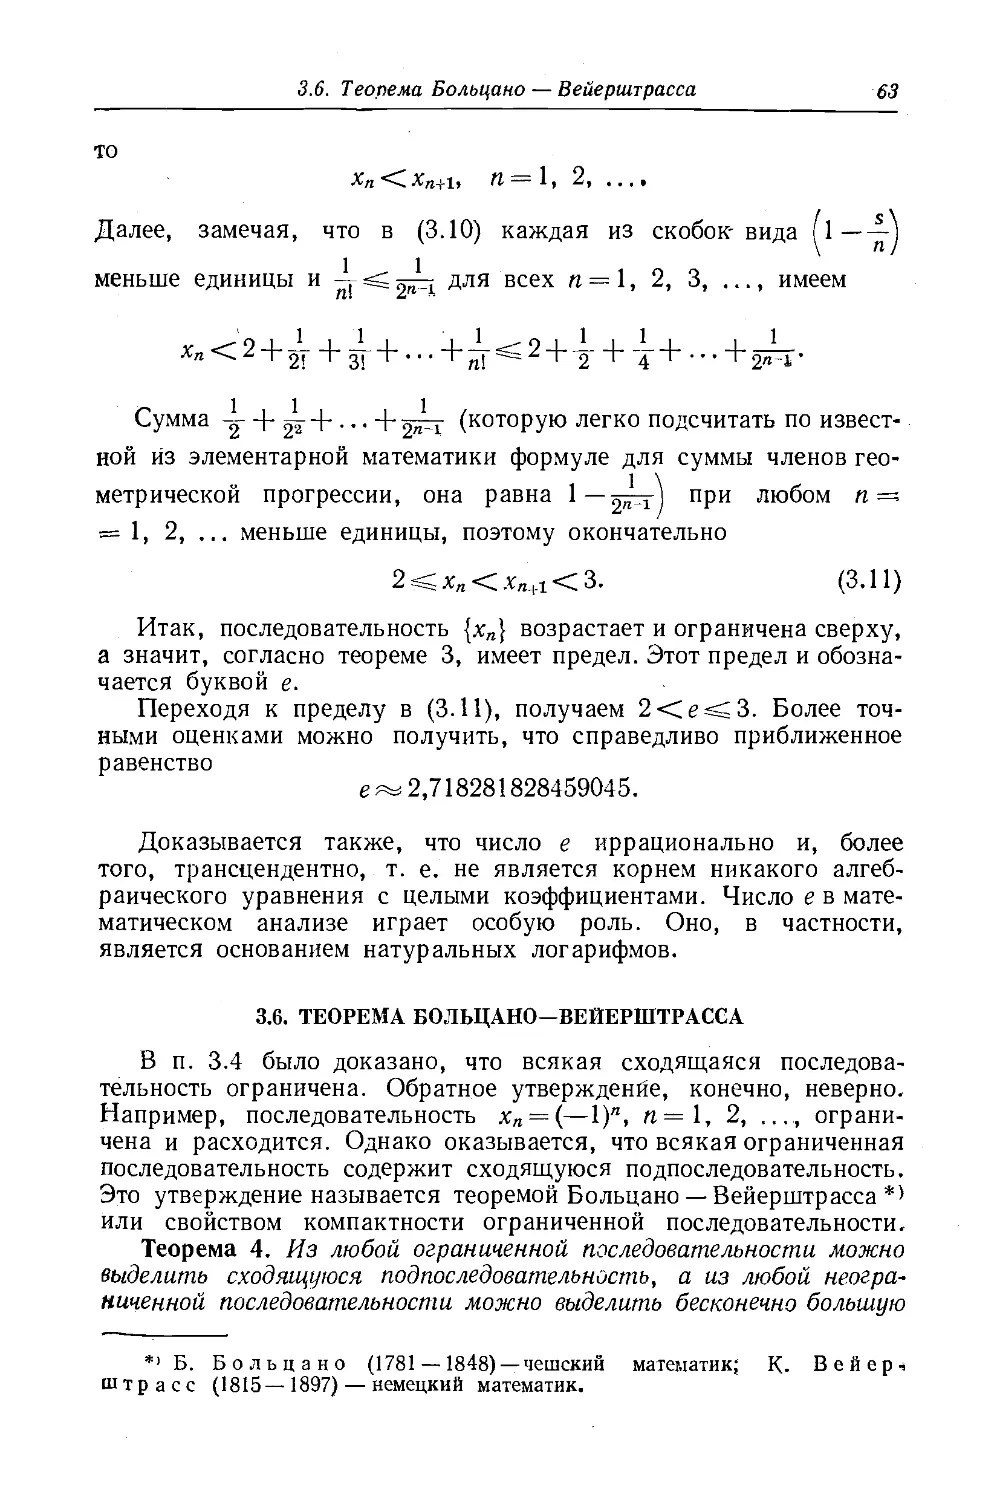 3.6 Теорема Больцано—Вейерштрасса